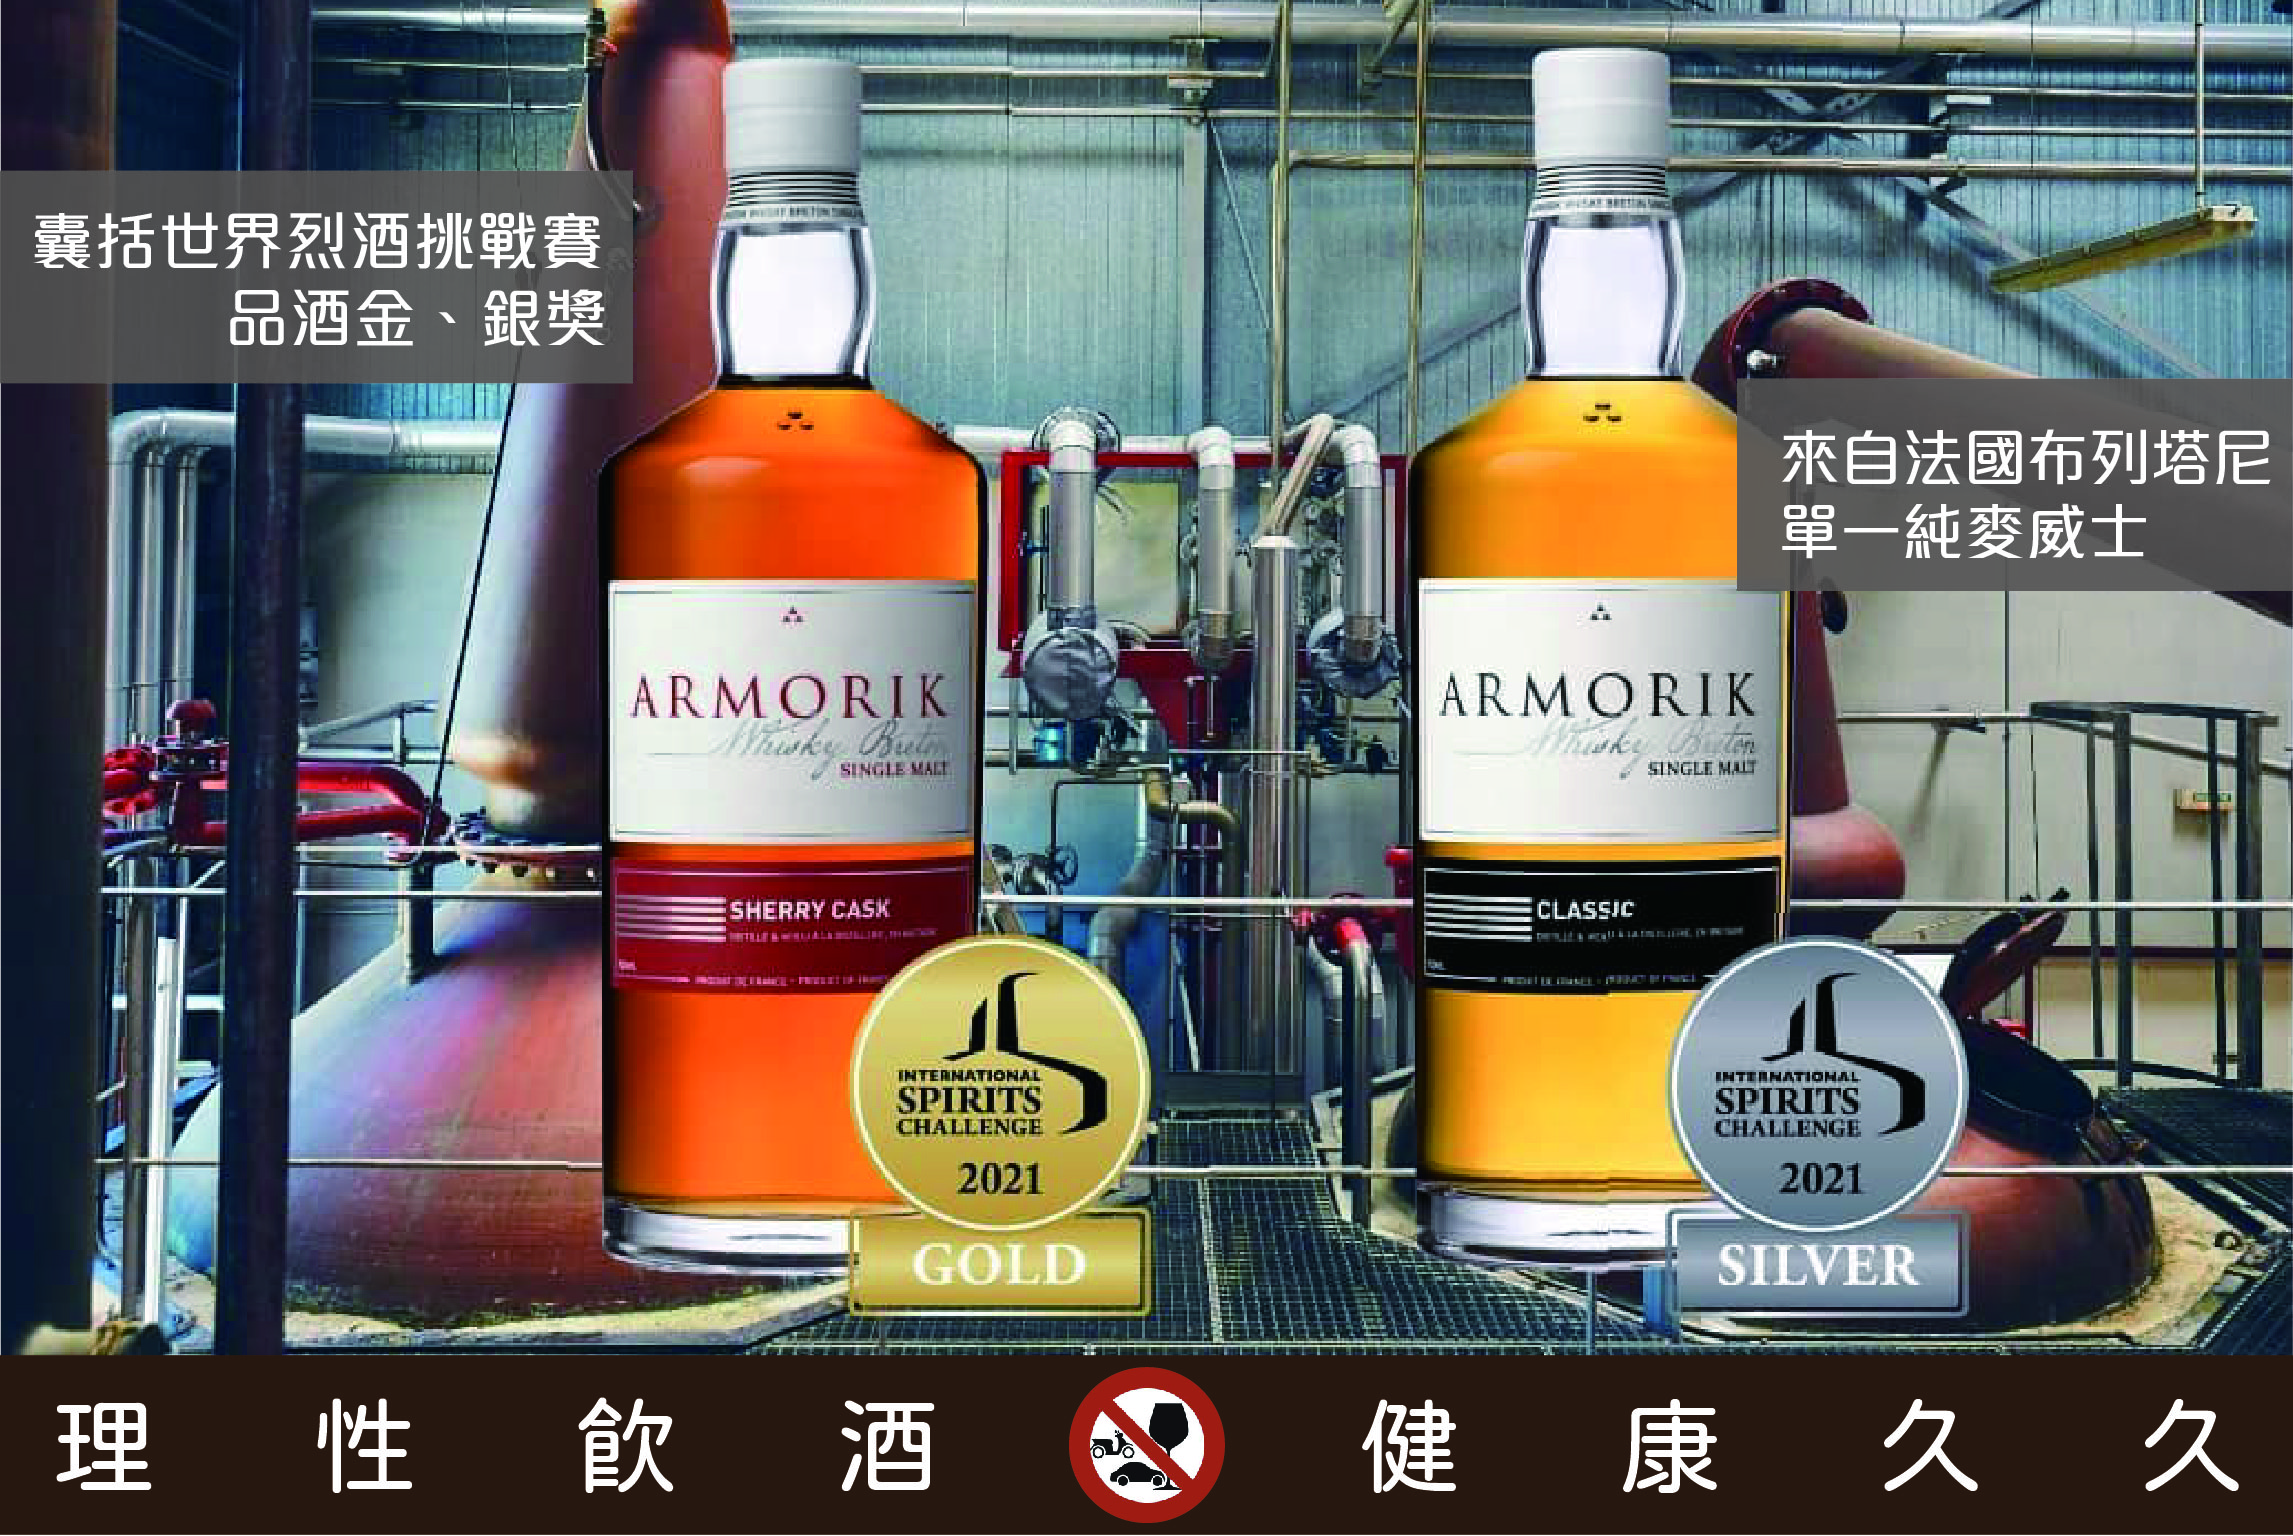 Nicolas Taiwan - Armorik : New Whisky brand 